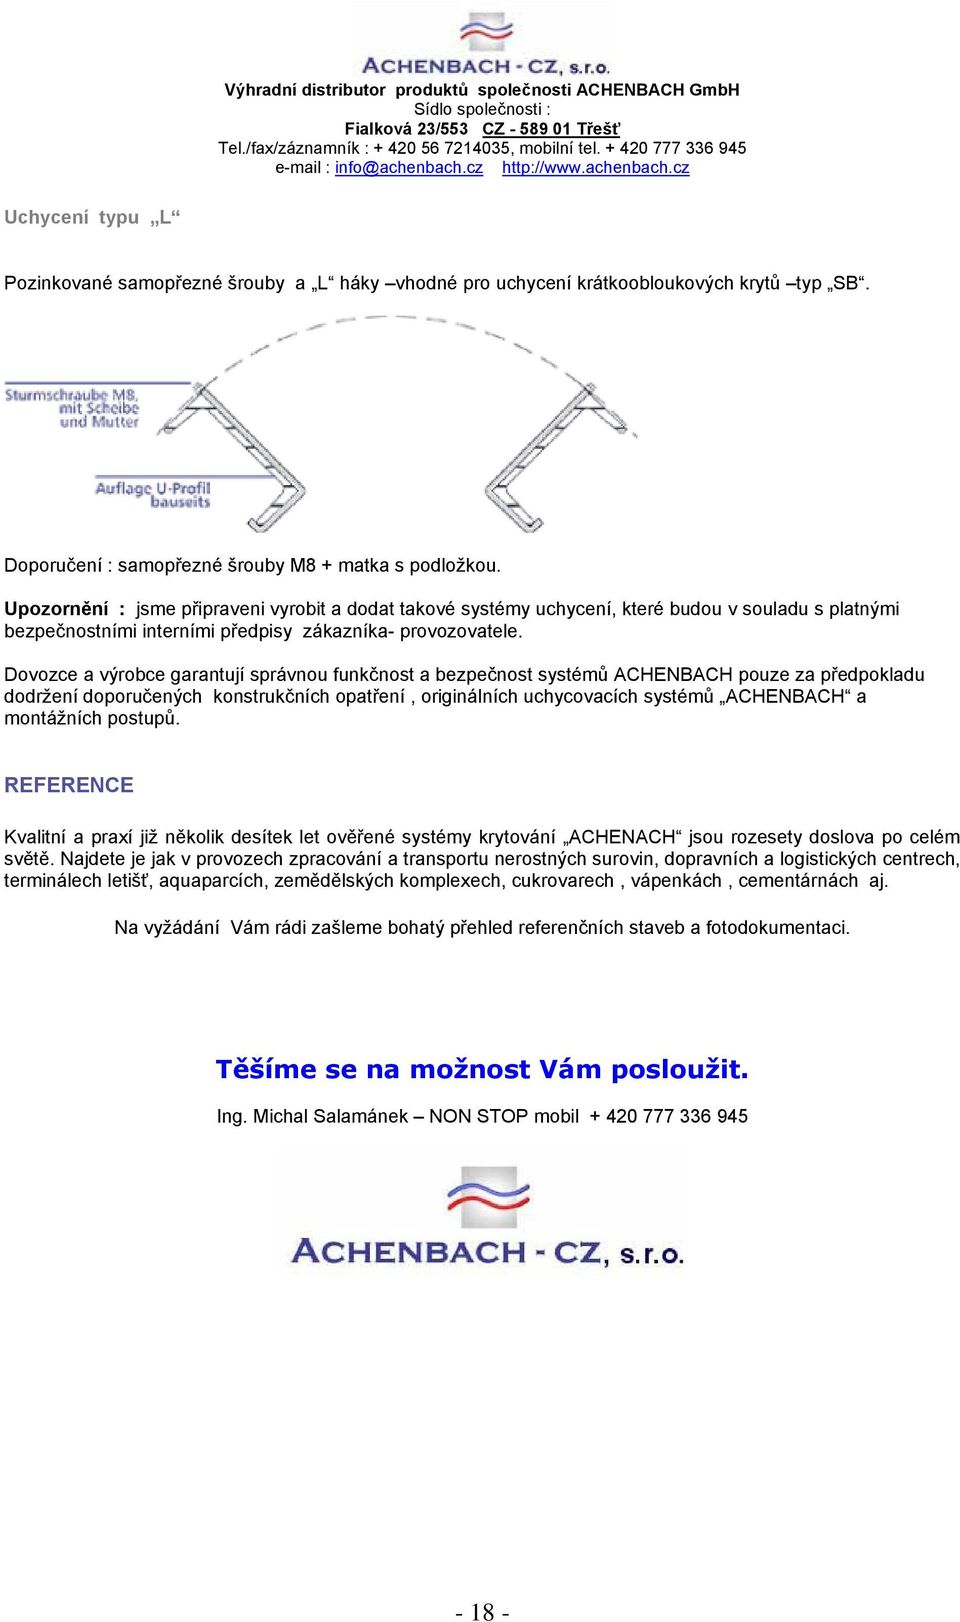 Dovozce a výrobce garantují správnou funkčnost a bezpečnost systémů ACHENBACH pouze za předpokladu dodržení doporučených konstrukčních opatření, originálních uchycovacích systémů ACHENBACH a